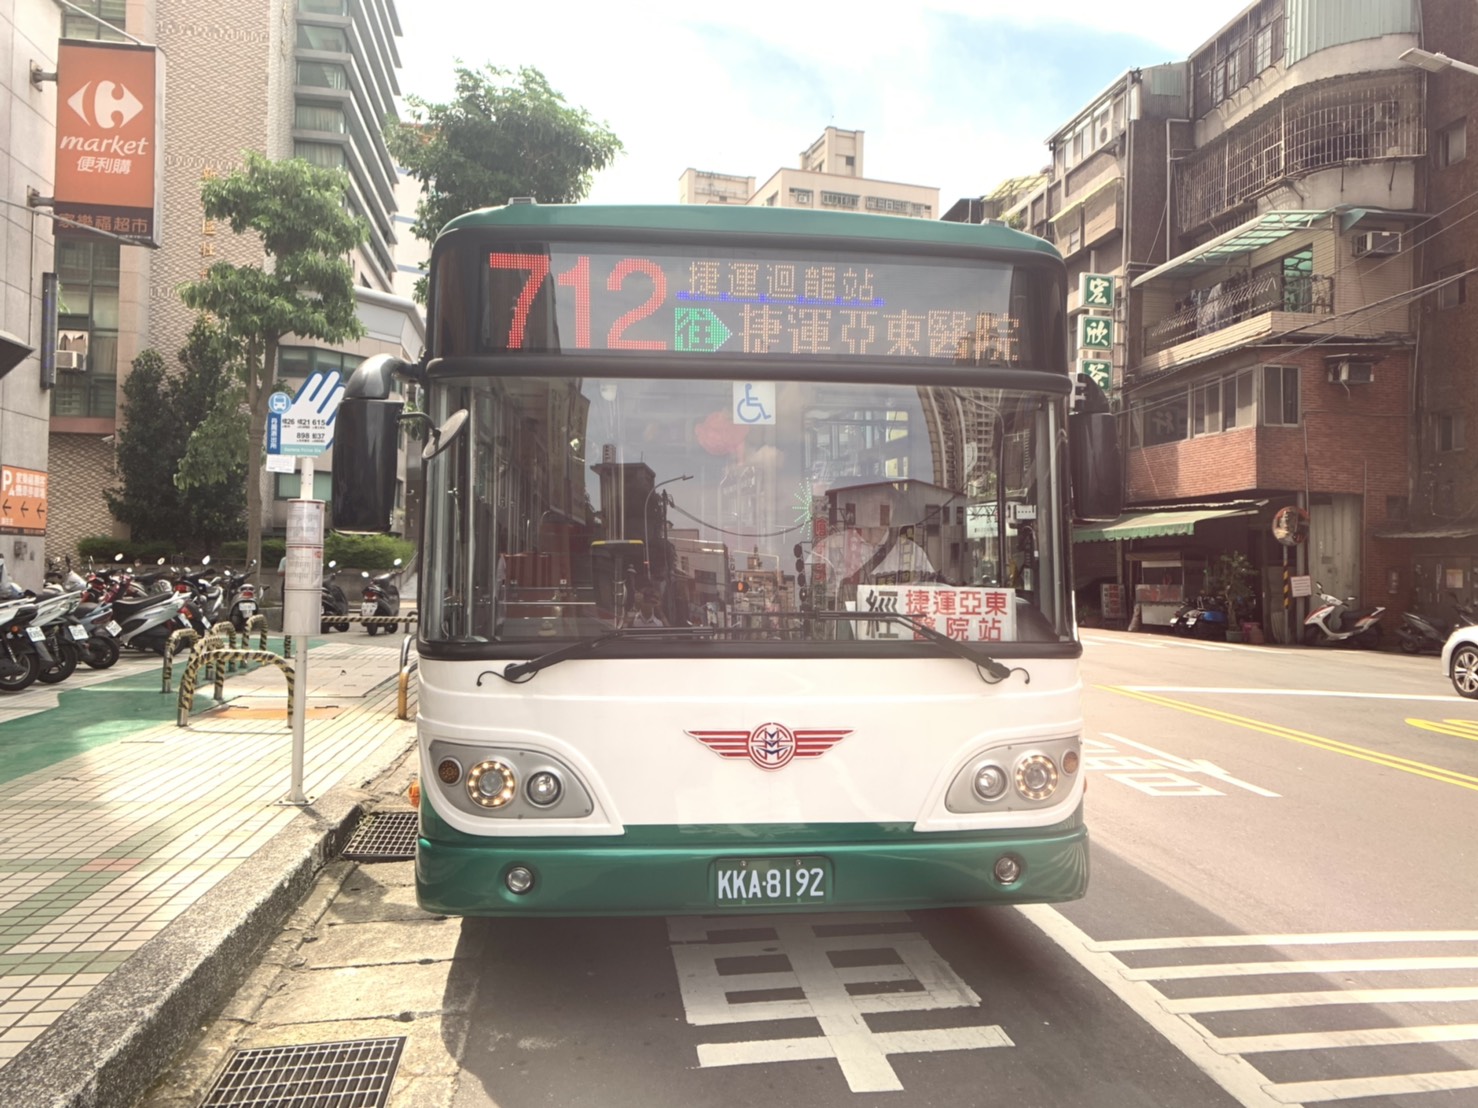 「712捷運迴龍站－樹林工業區－捷運亞東醫院站」公車路線將於6月25 日上路